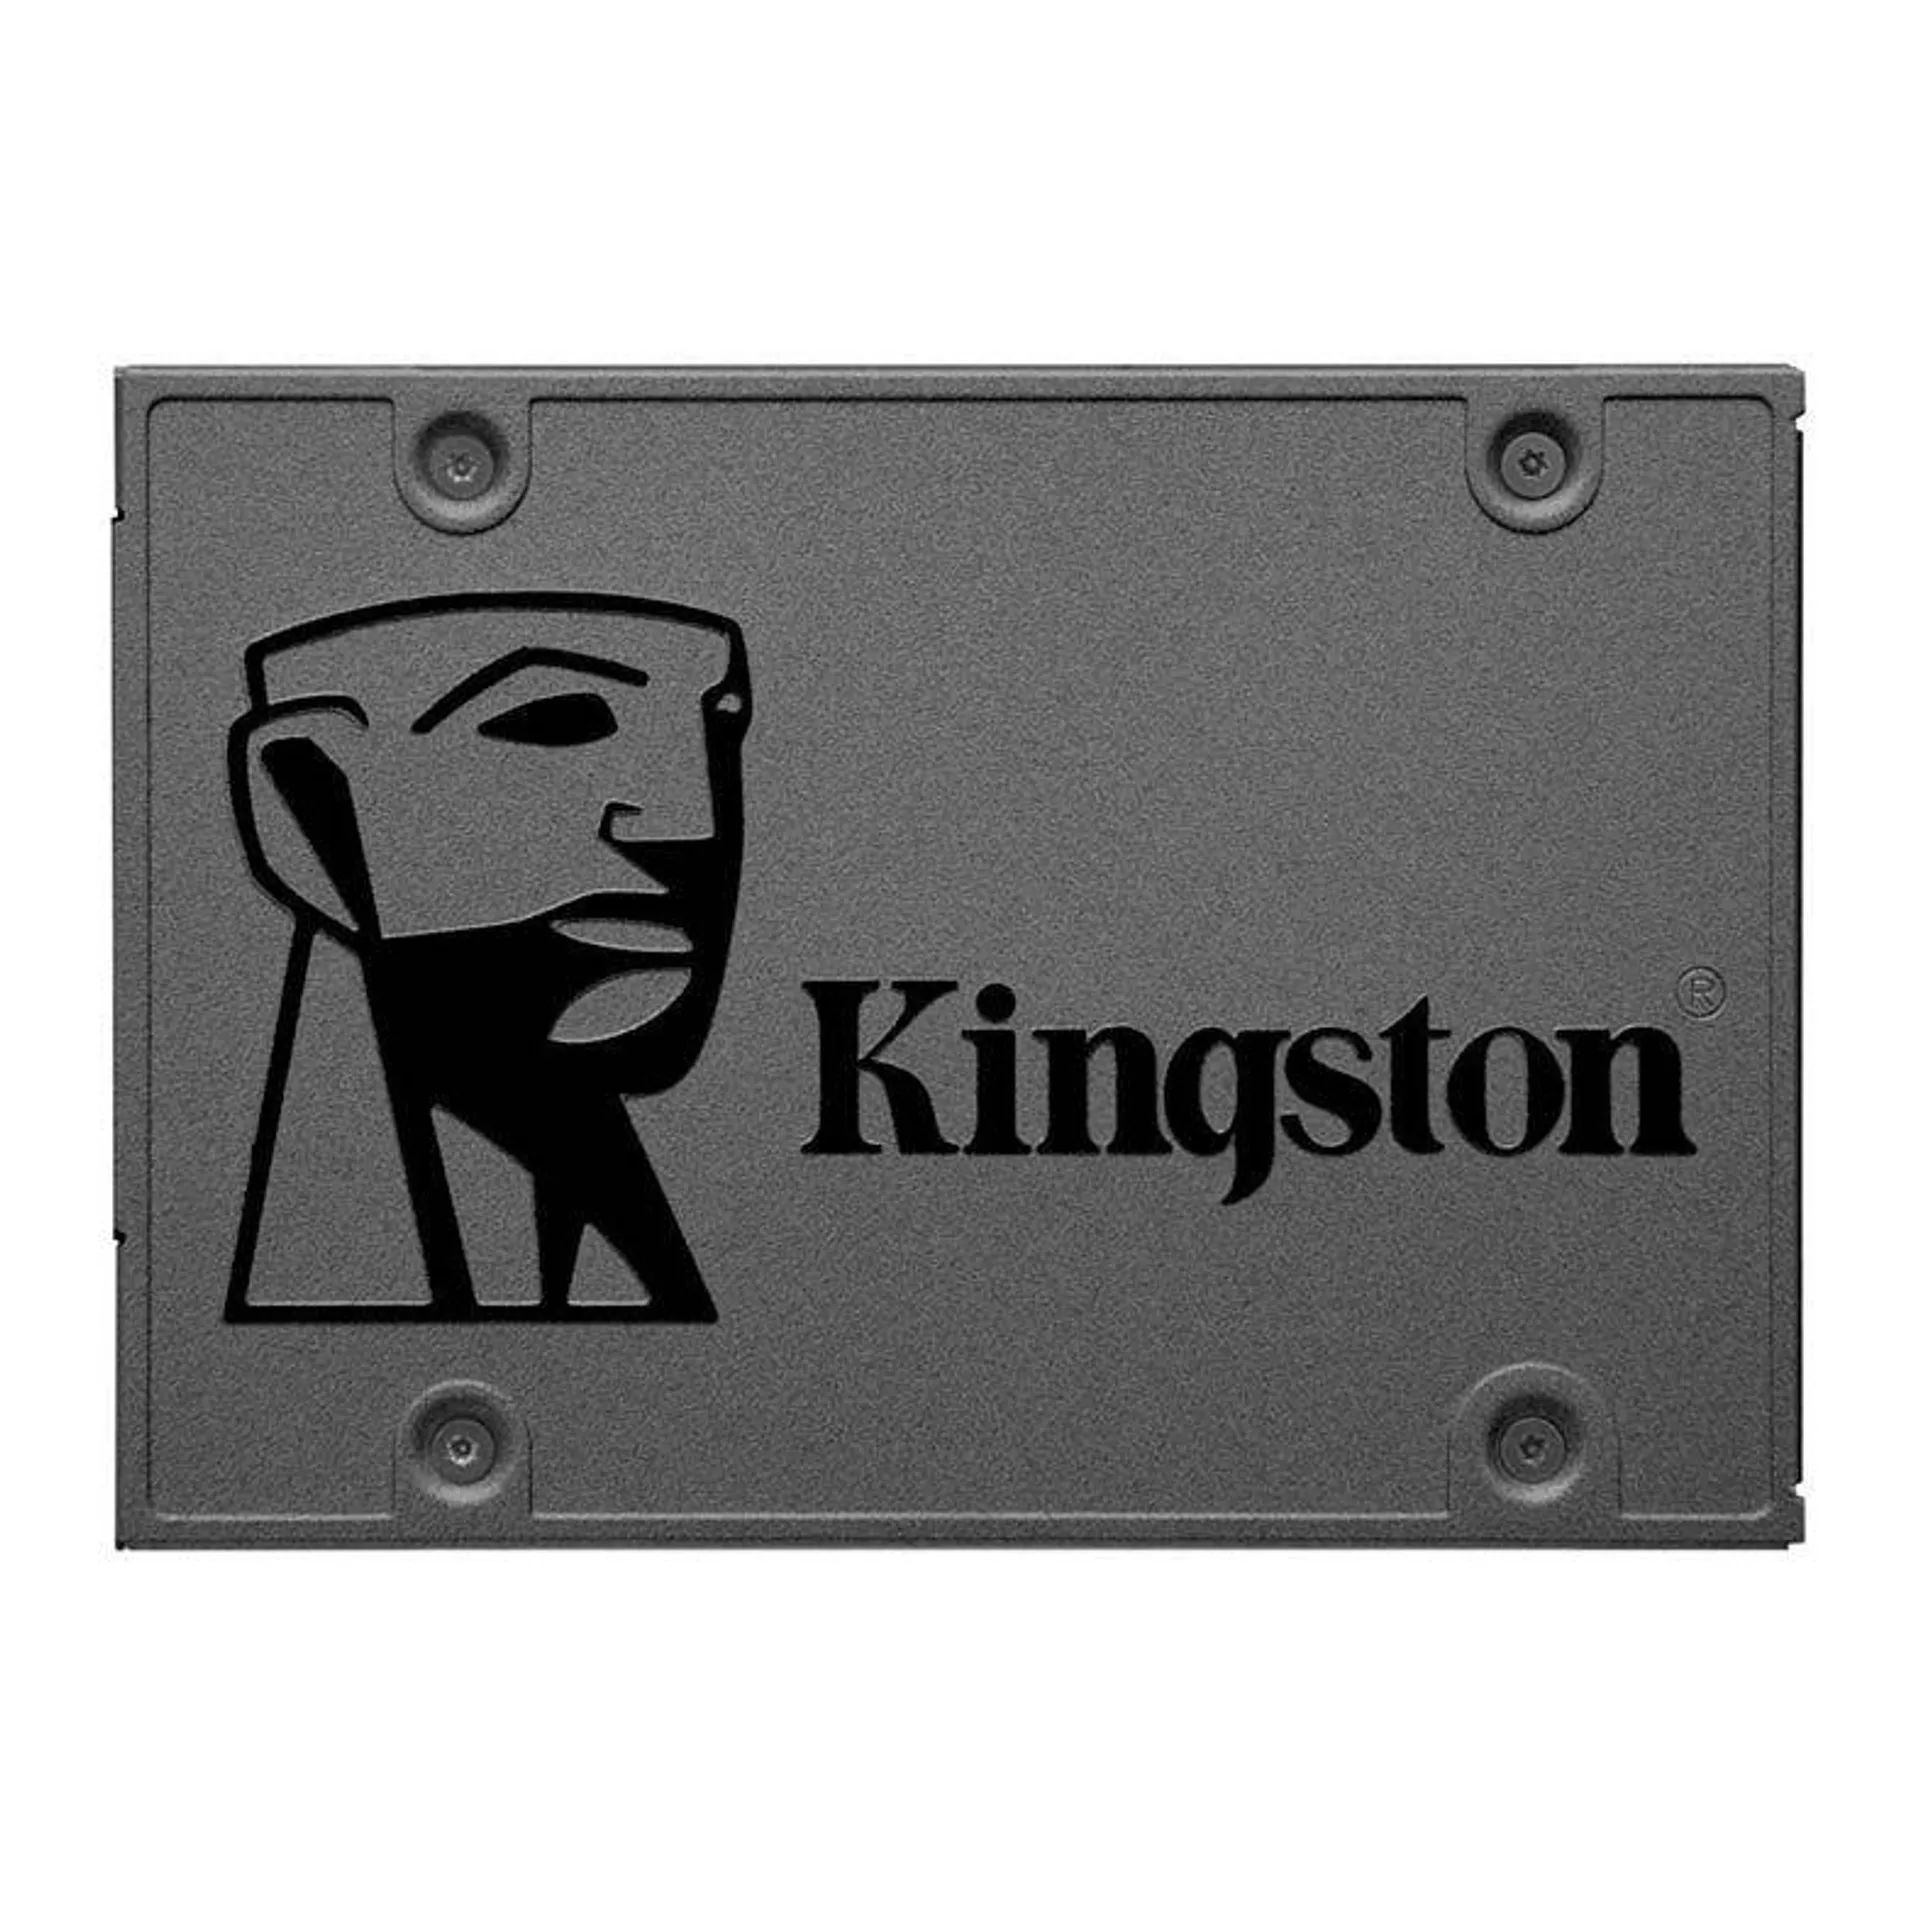 SSD Kingston A400, 480GB, 2.5, Sata III 6GB/s, Leitura 500MB/s, Gravacao 450MB/s, SA400S37/480G